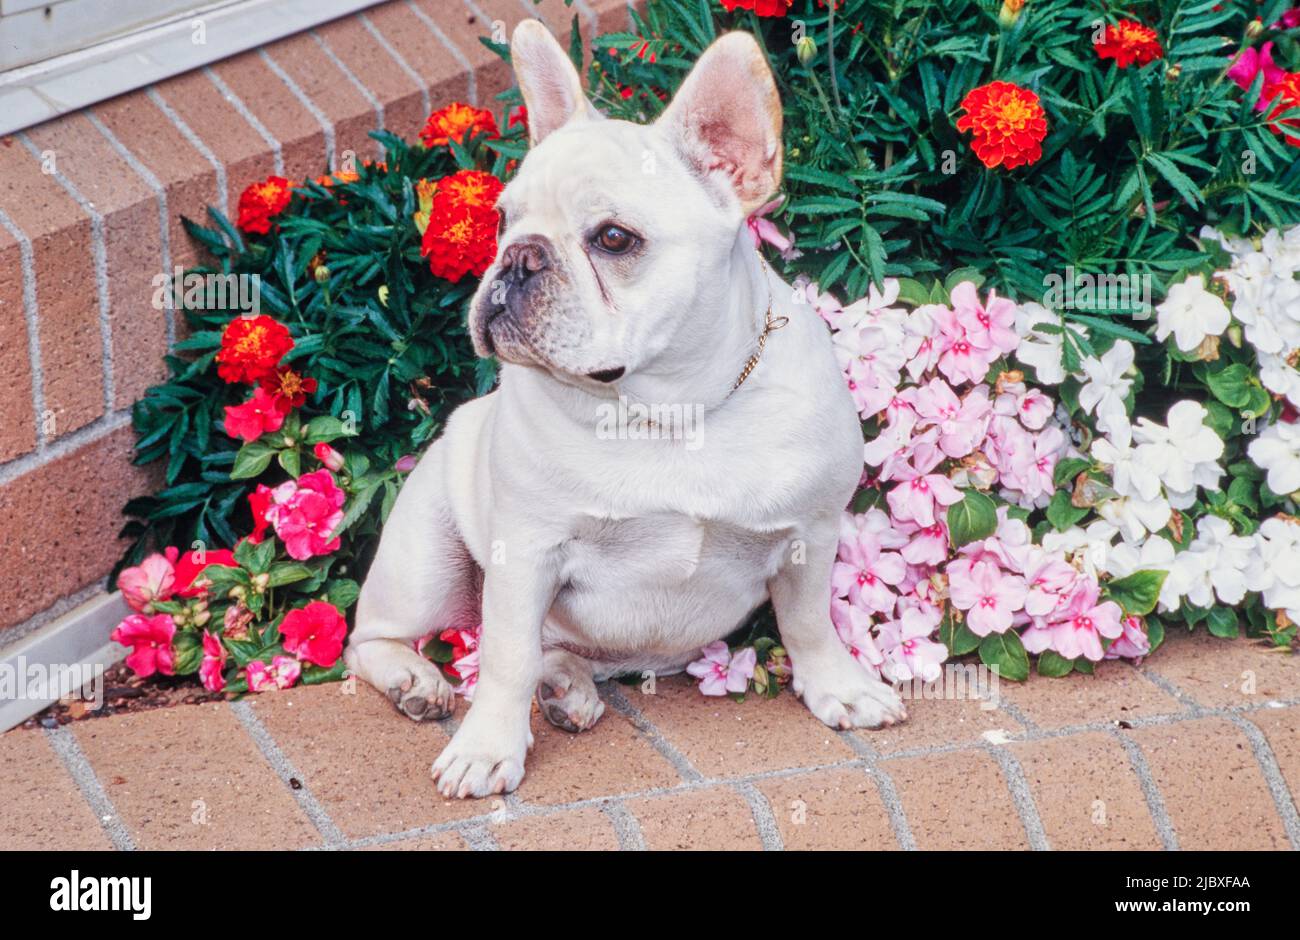 Un bulldog français de couleur crème assis sur un jardinier en briques rempli de fleurs rouges, roses et blanches Banque D'Images